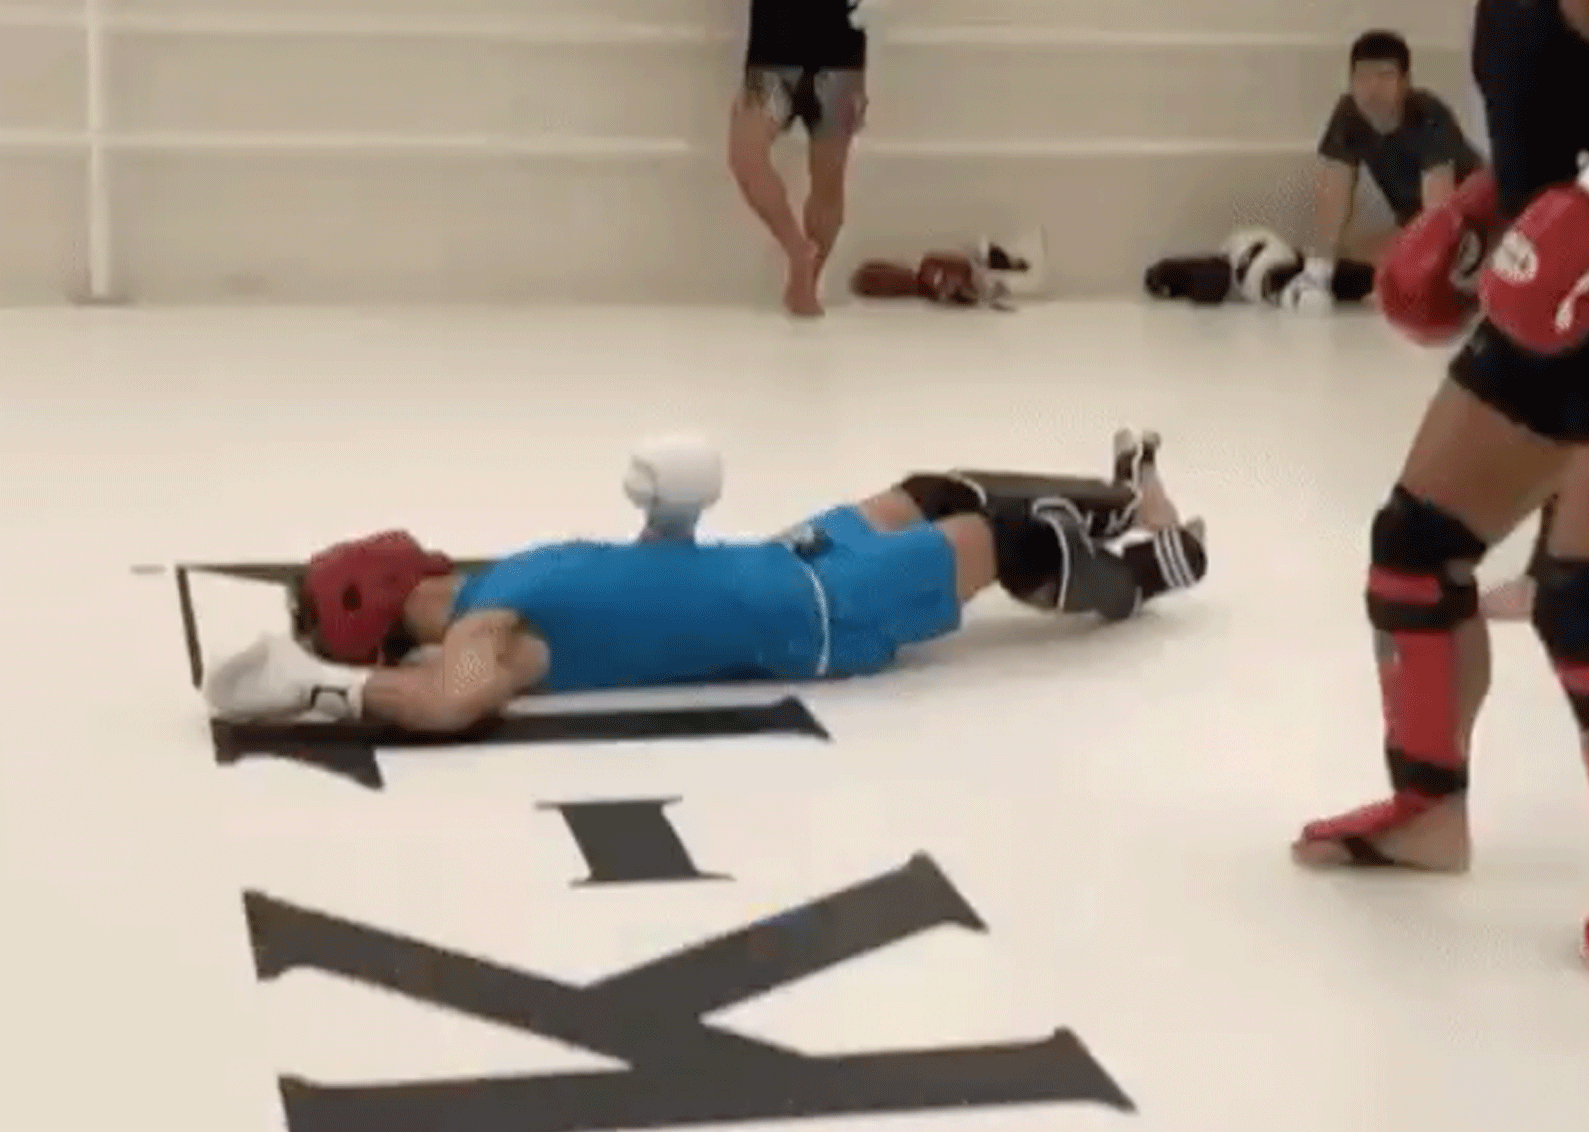 K-1 Kickboks kampioen bruut knock-out geslagen tijdens training (video)